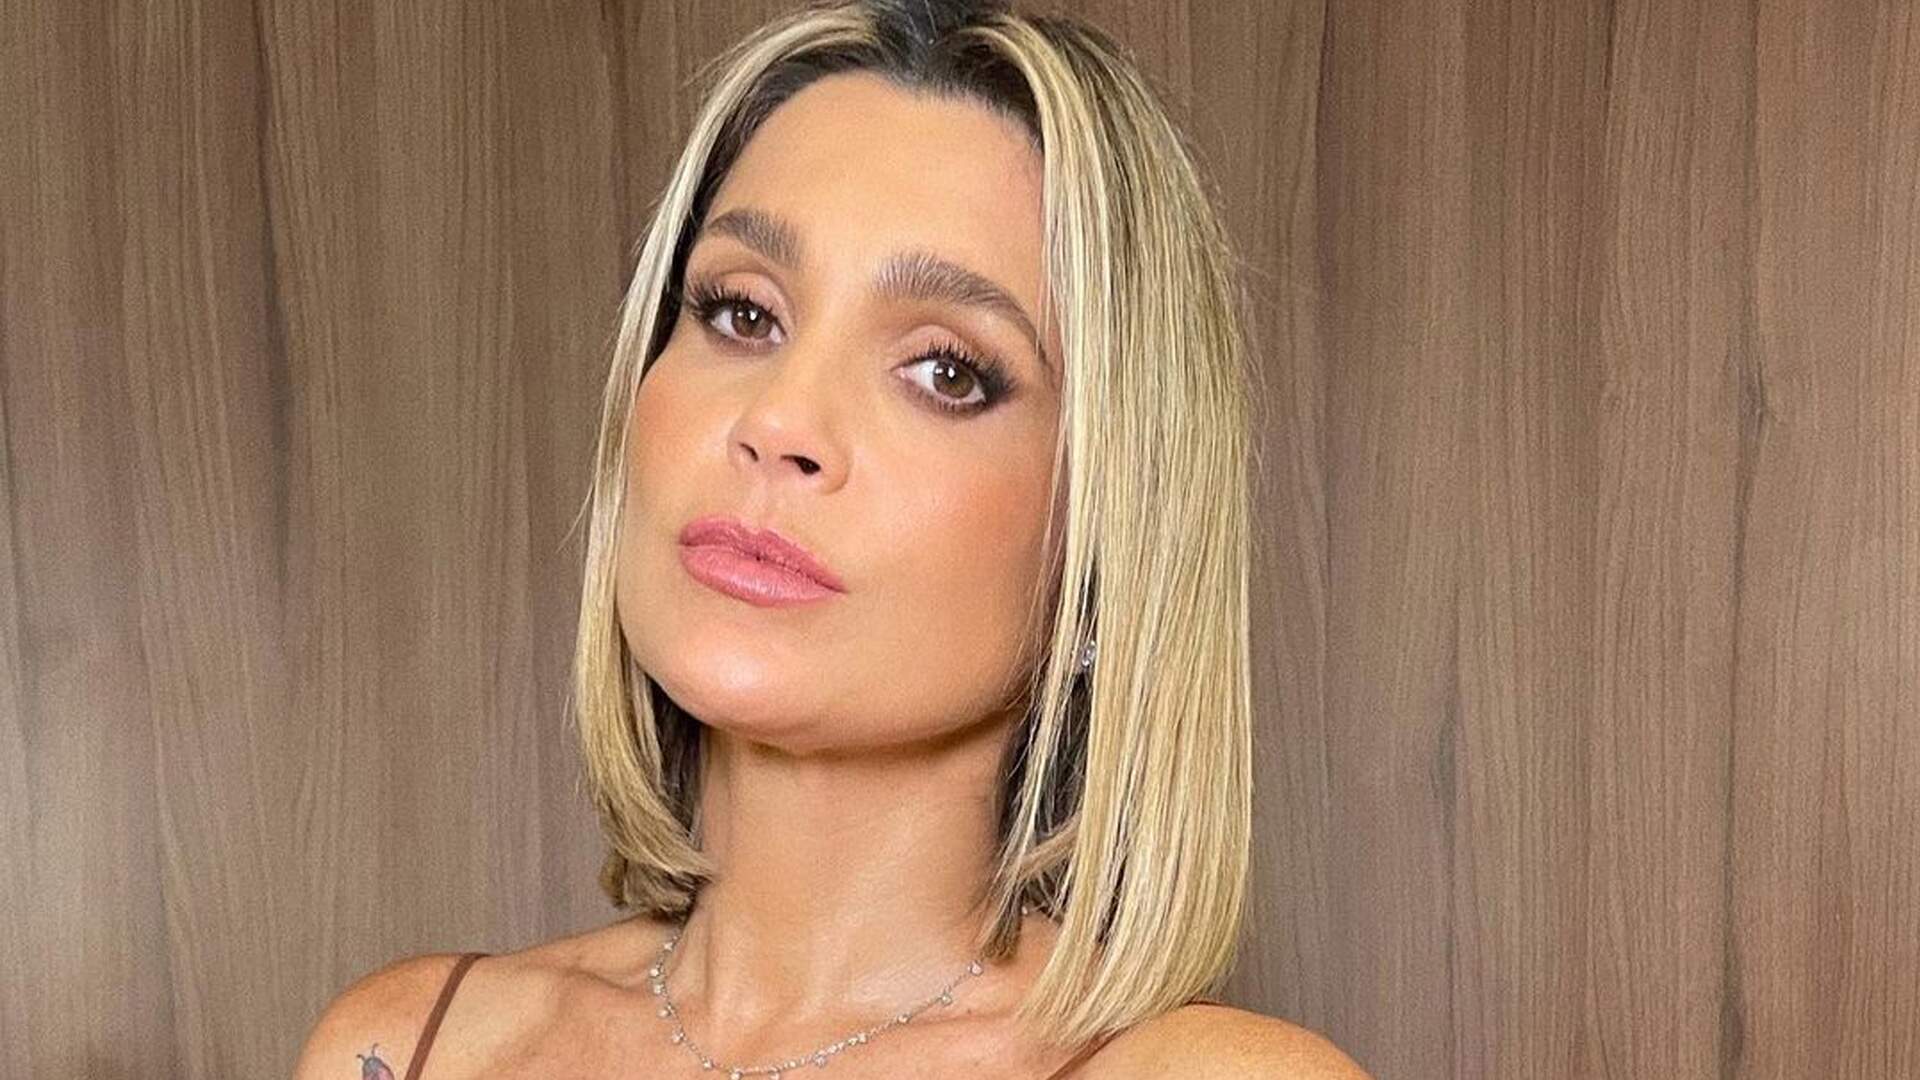 Flávia Alessandra escolhe looks modernos para o frio e encanta internautas: “Eu amo” - Metropolitana FM